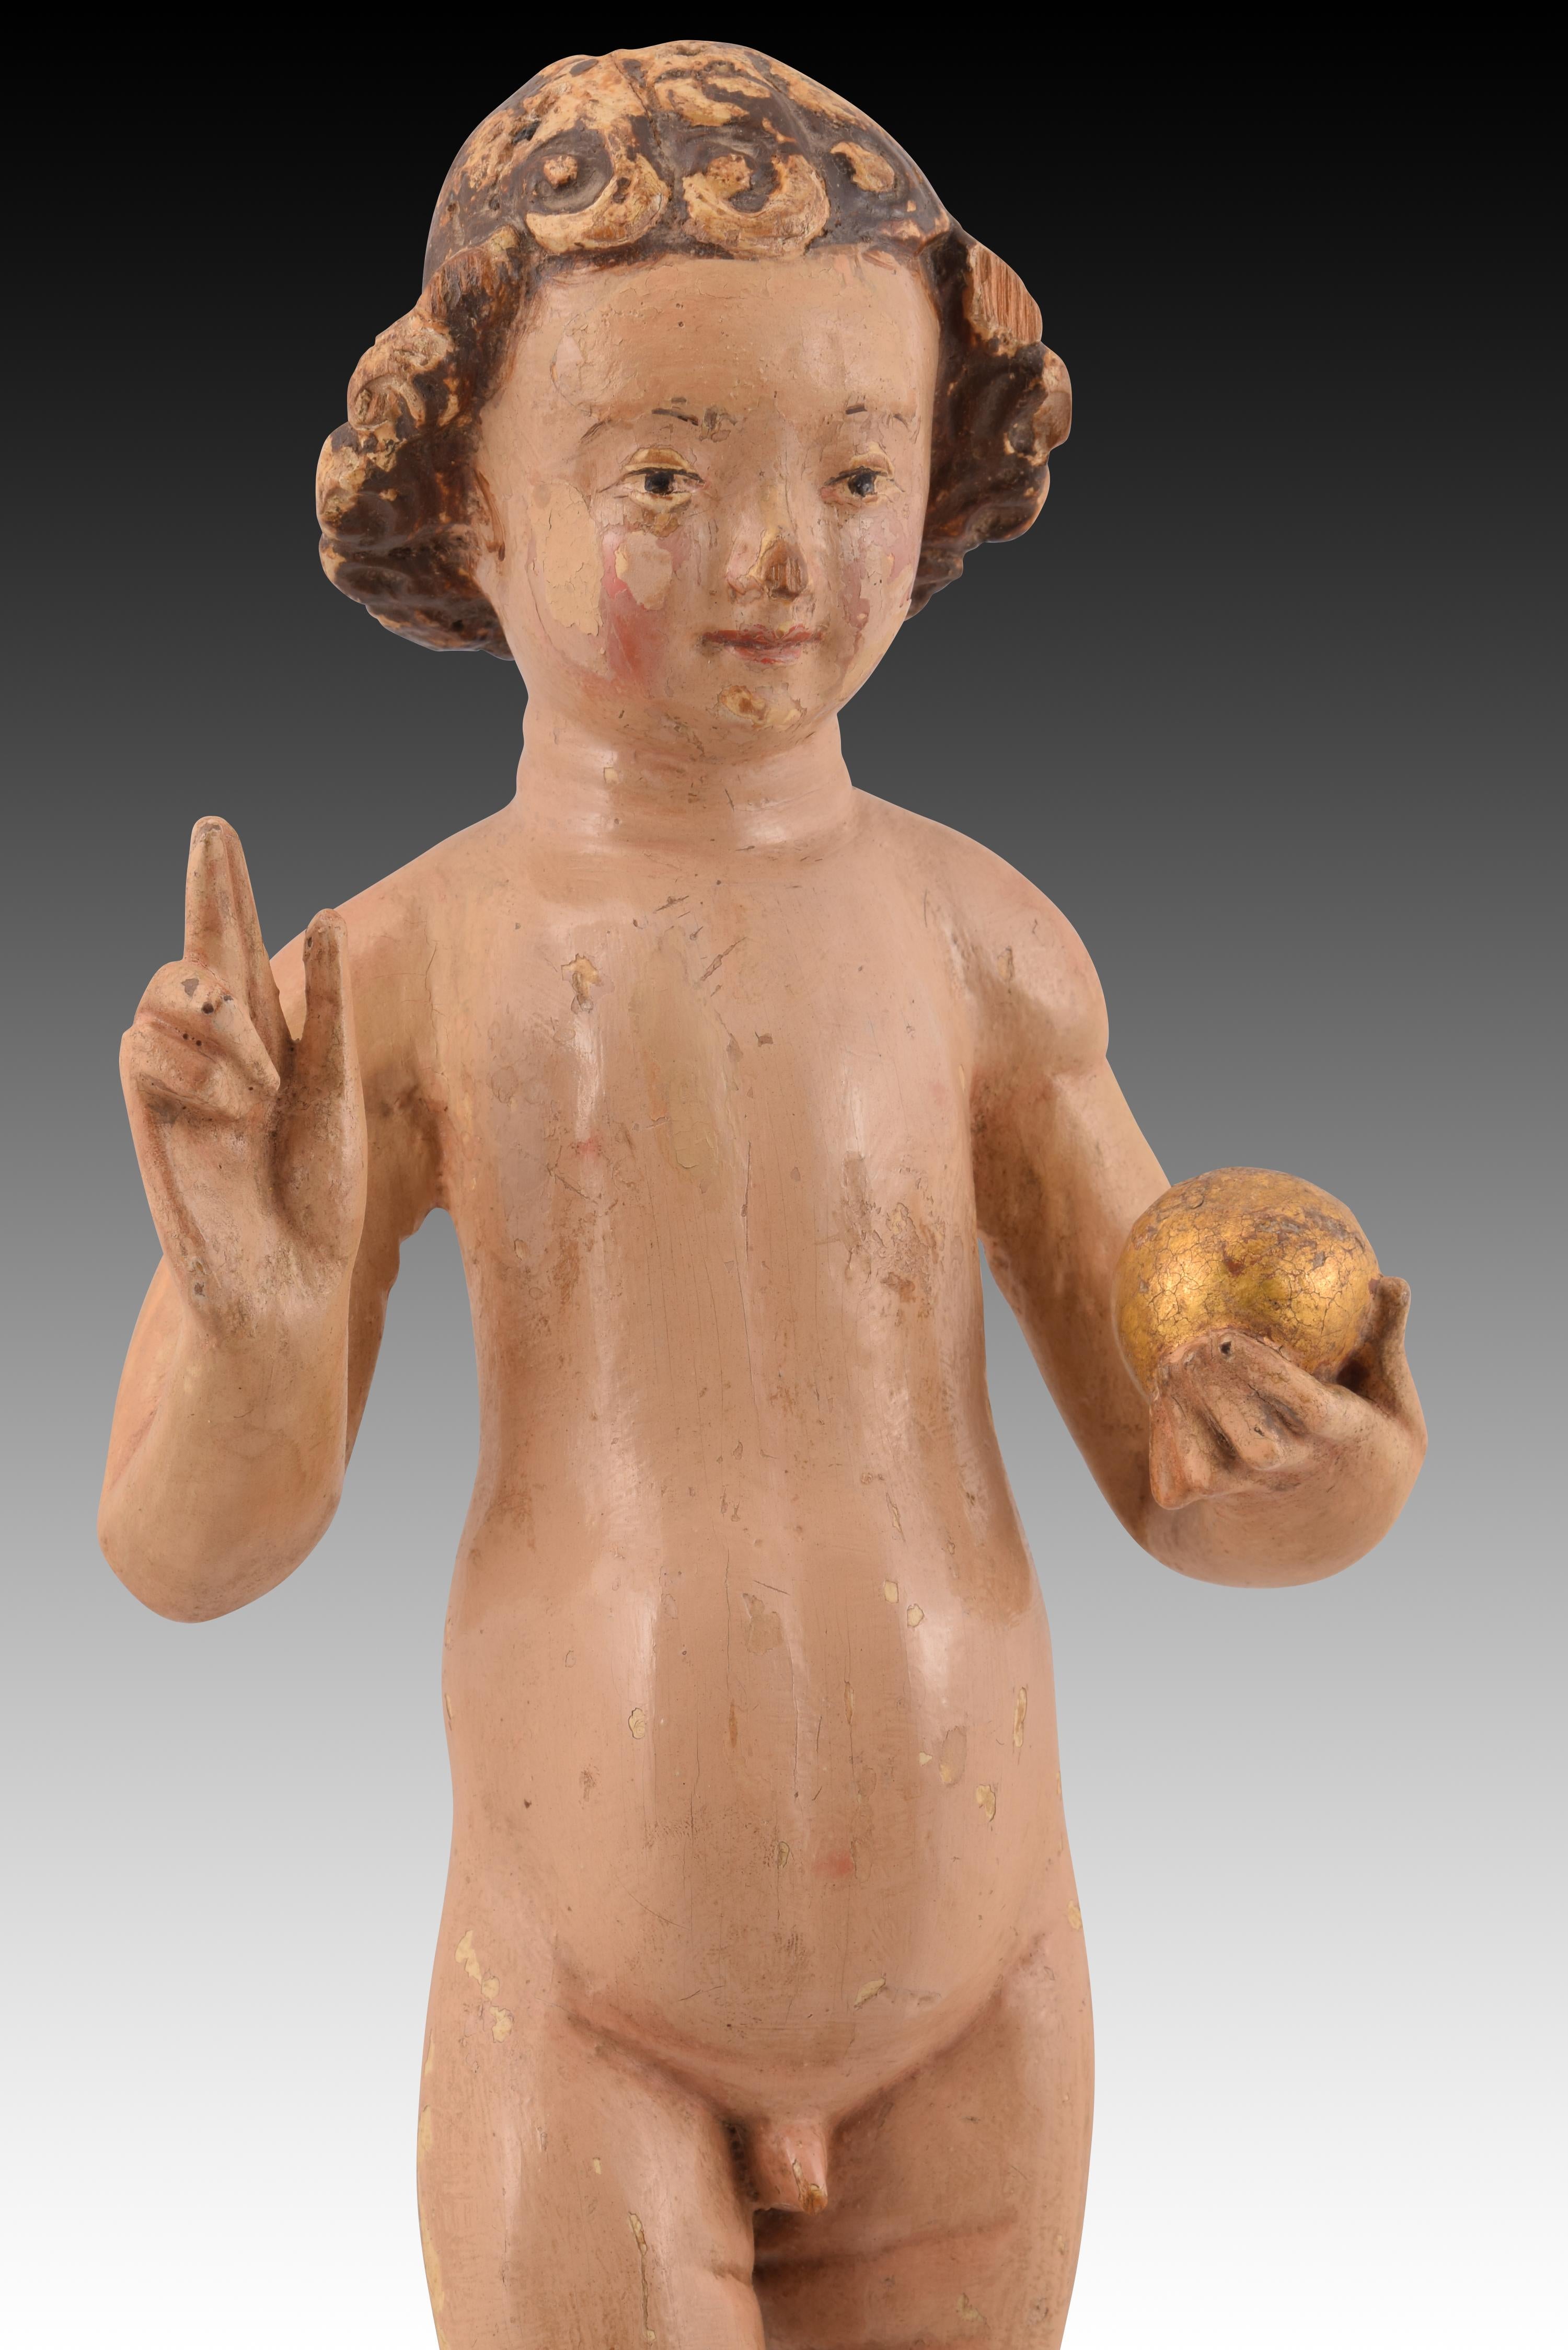 Autre Child Jesus Savior of the World Le bois. École flamande, 16e siècle.